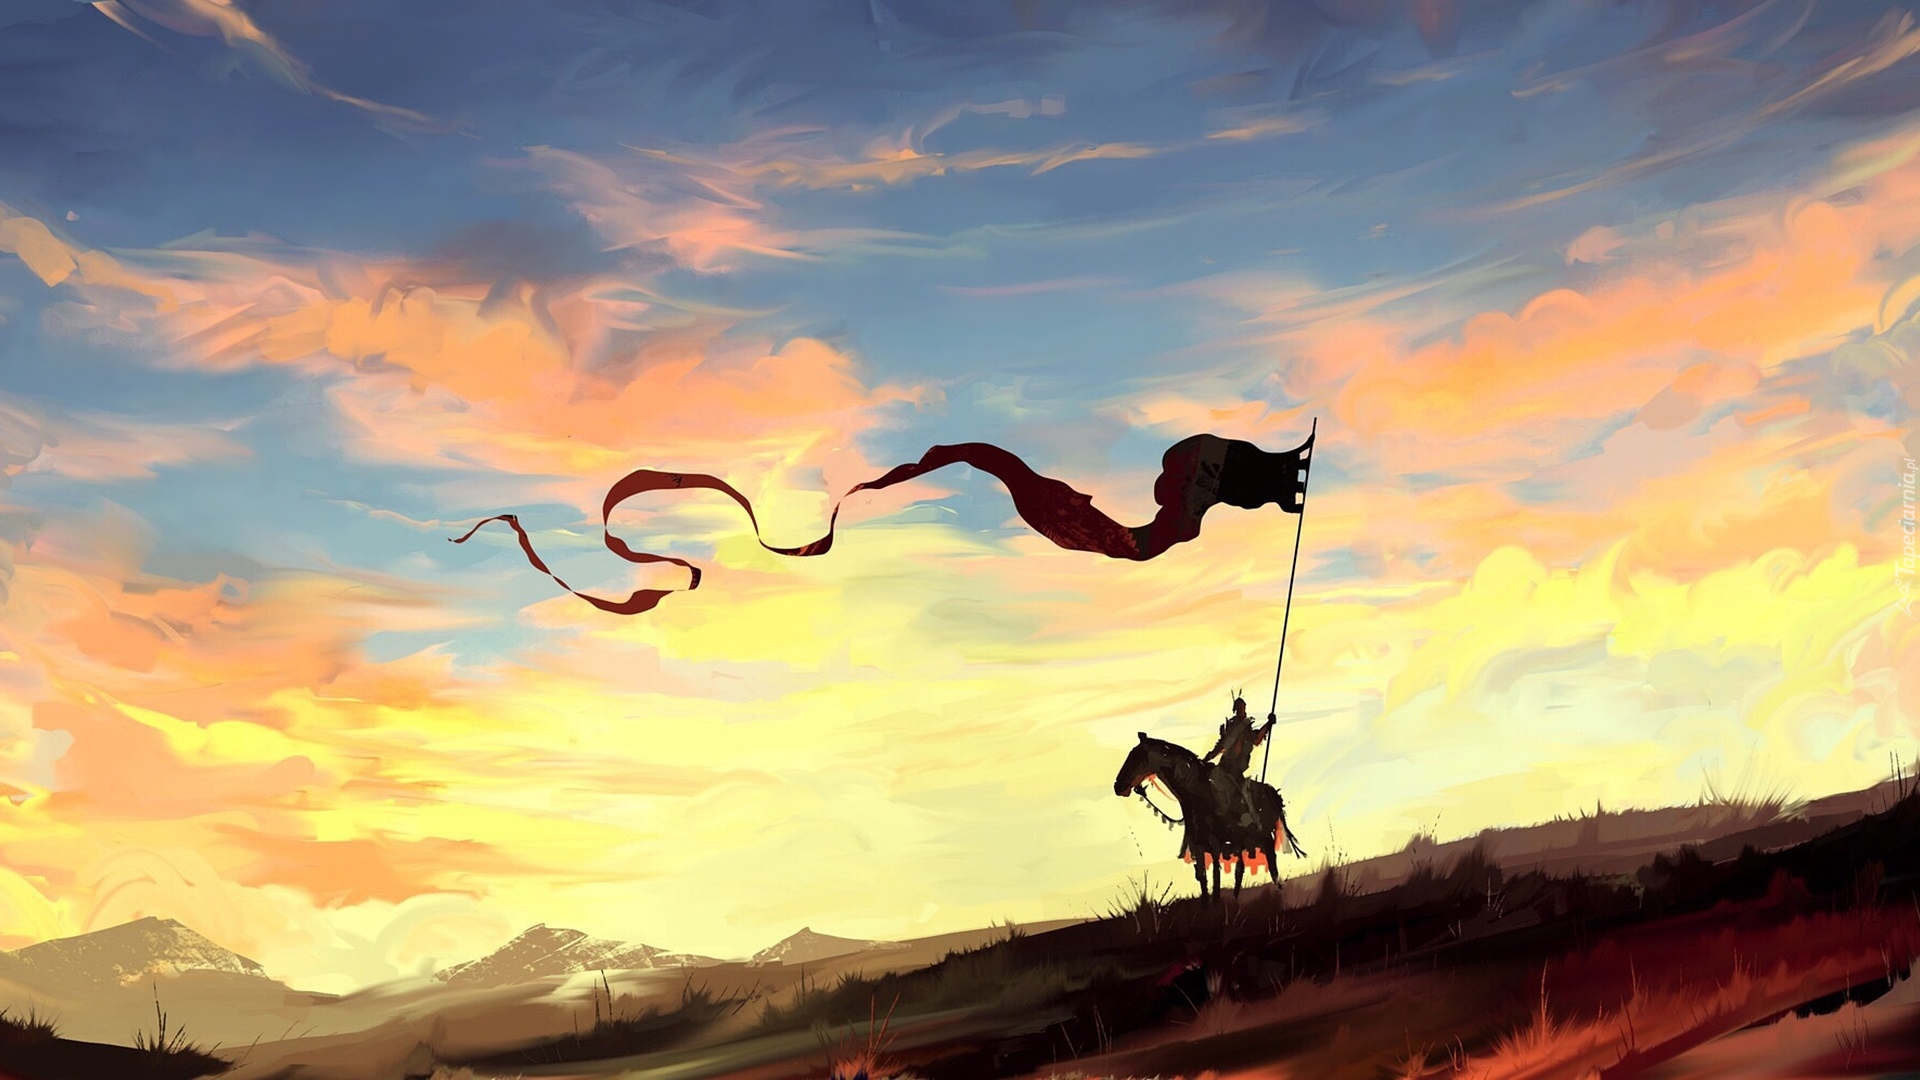 Rycerz, Koń, Chorągiew, Wschód słońca, Paintography